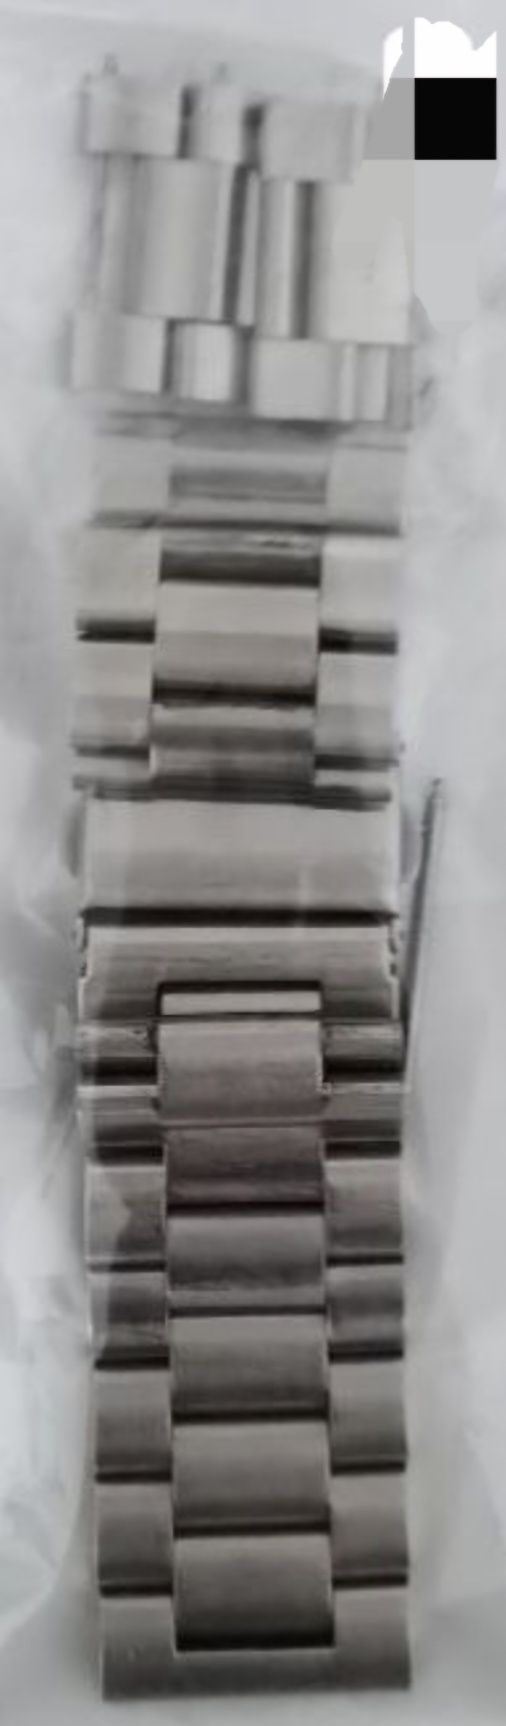 Braceletes de 20 e 22 mm para Smartwatch